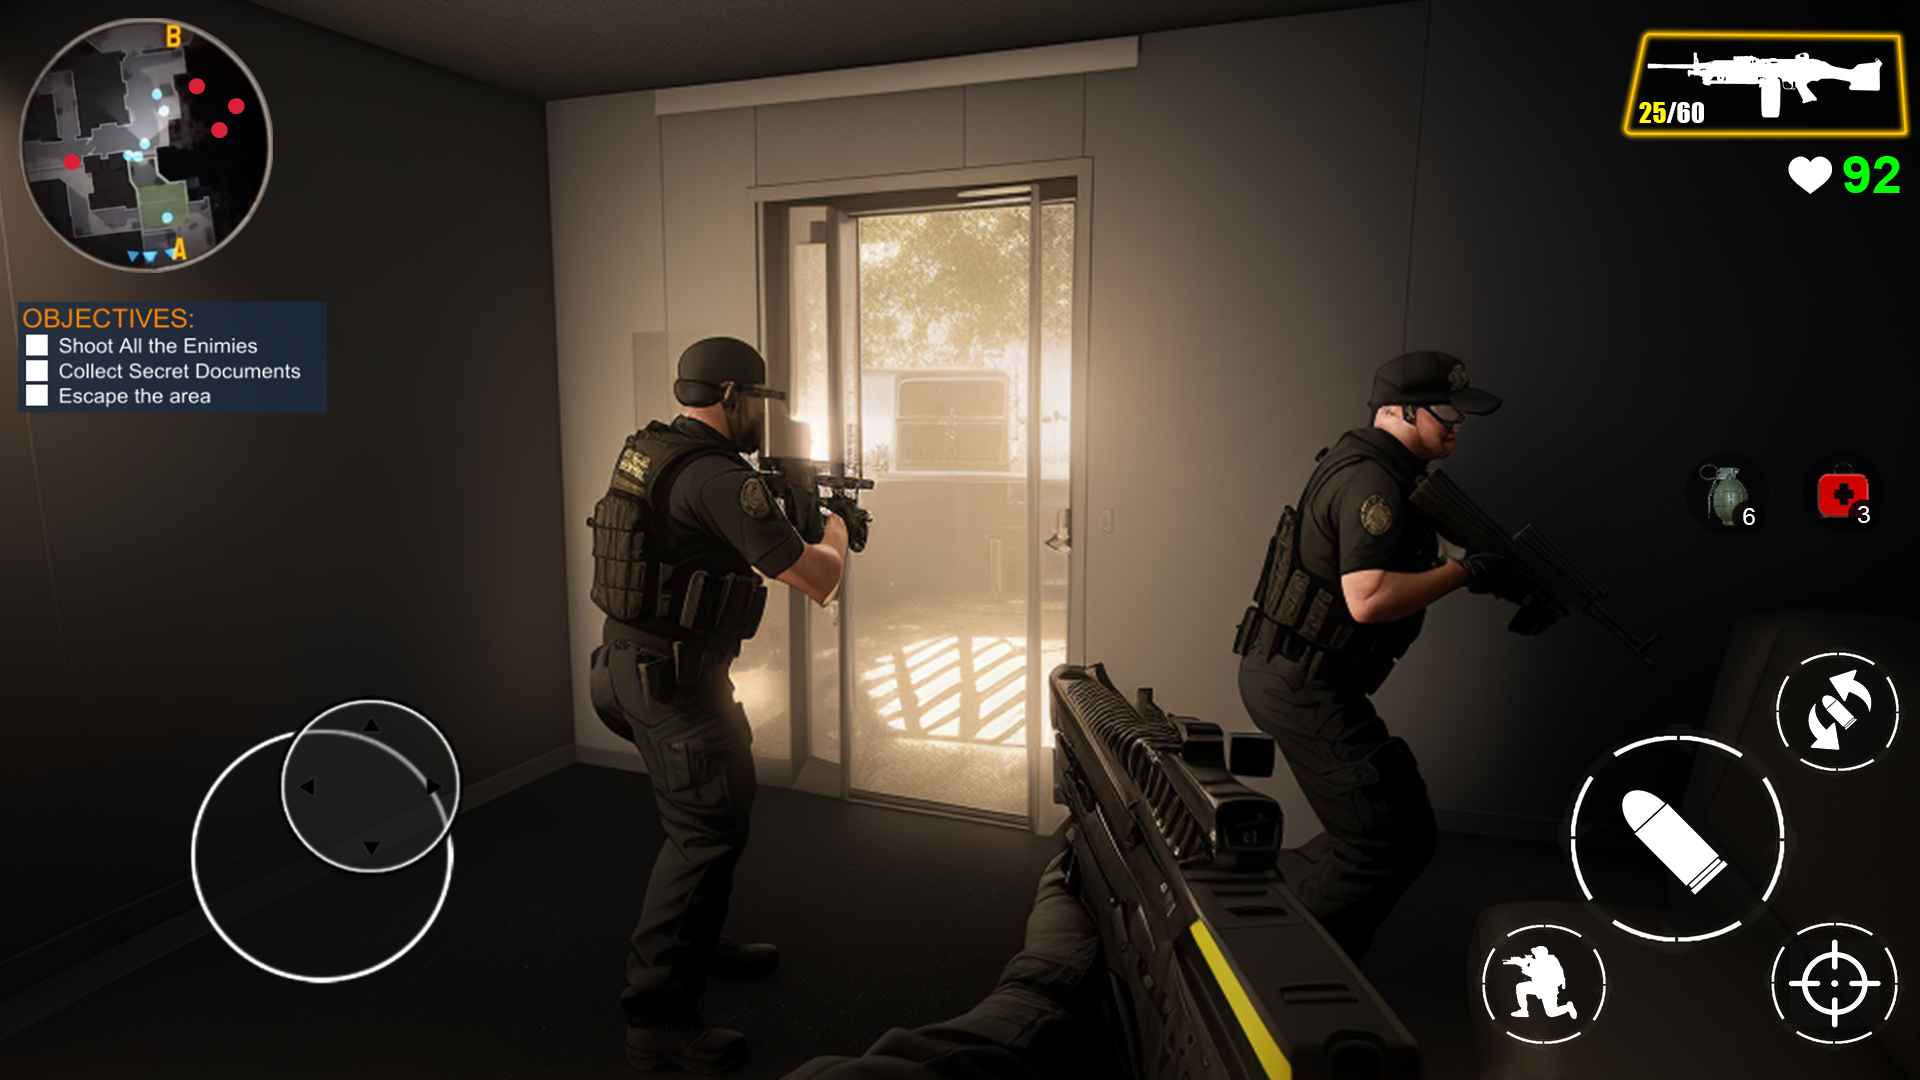 Screenshot 1 of Equipo de élite de juegos SWAT sin conexión 0.2